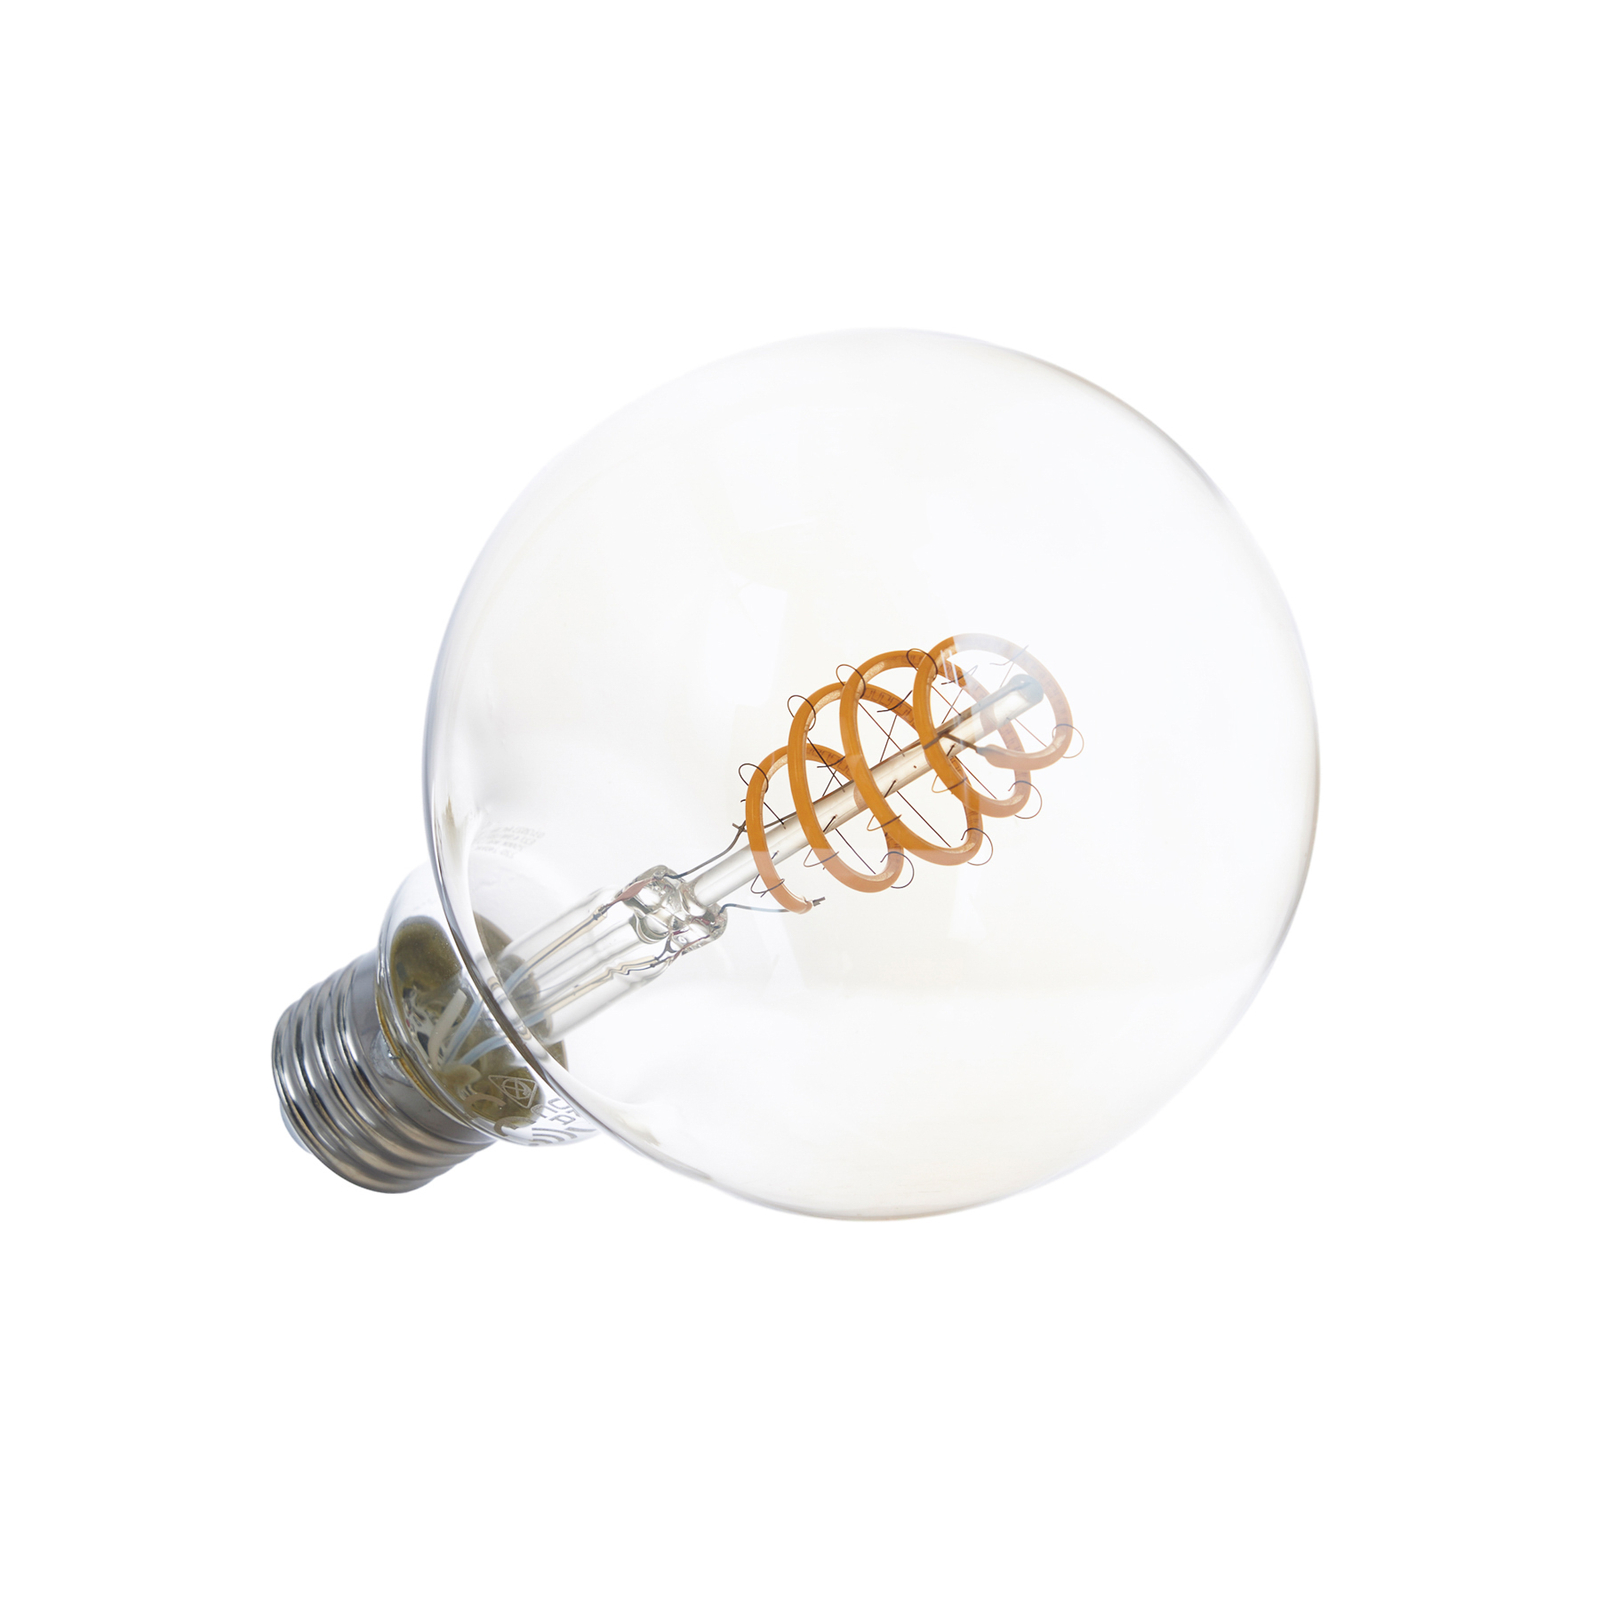 LUUMR Išmanioji LED lempa 3vnt E27 G95 4,9W skaidrios gintarinės spalvos